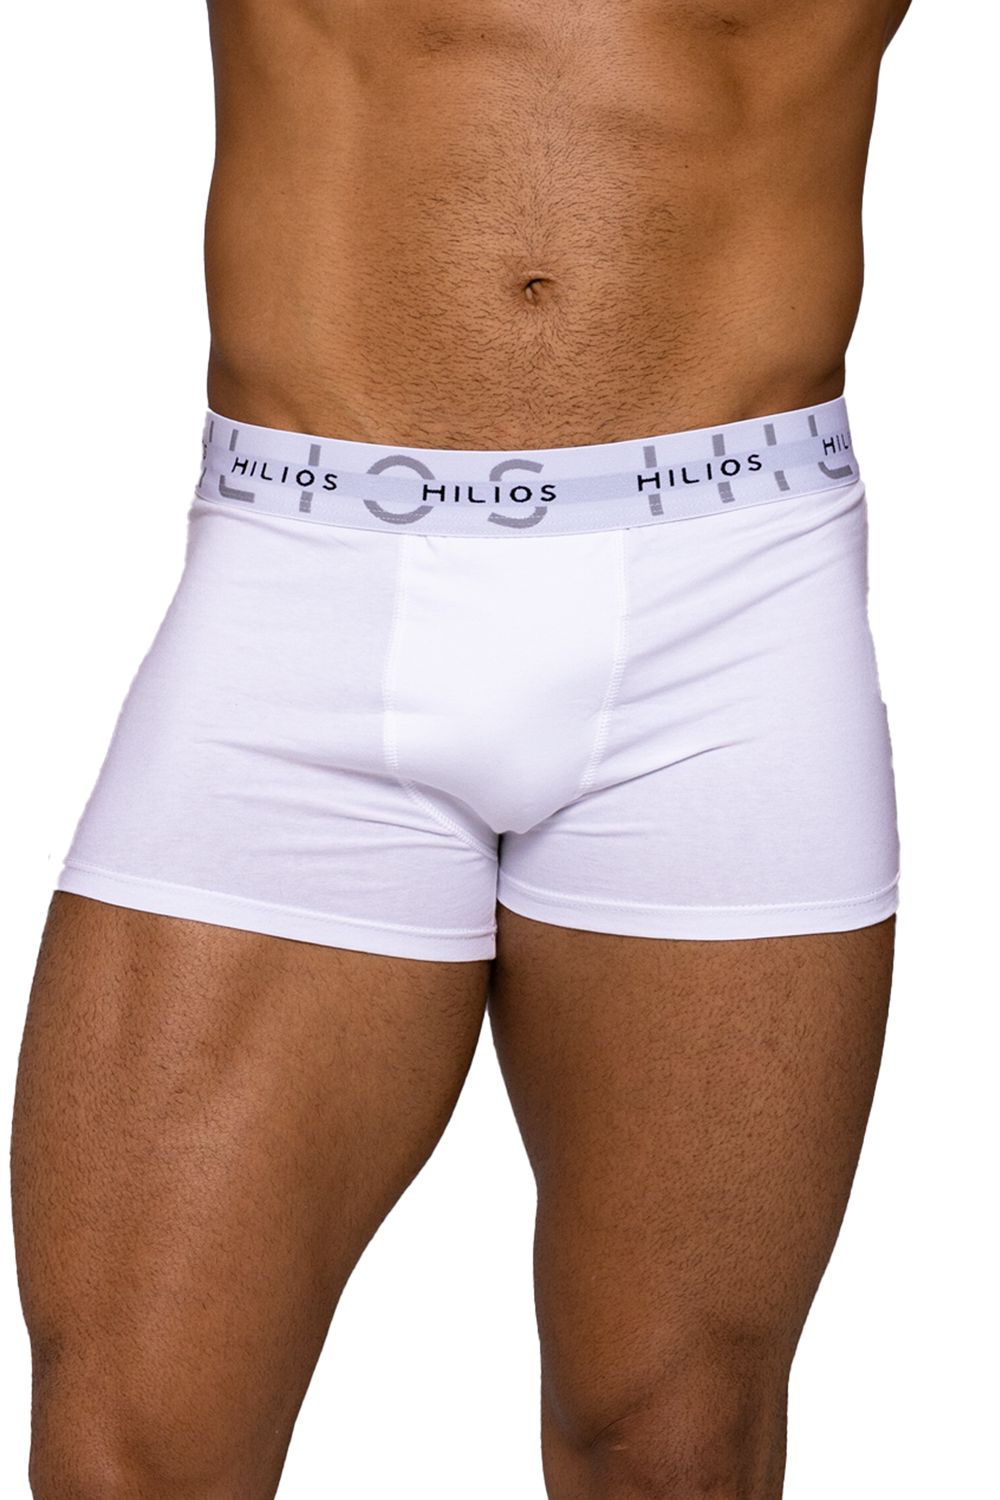 3 Cuecas Boxer Box Underwear Algodão Lisa Branco Hilios - Hilios -  Inspirado em você!